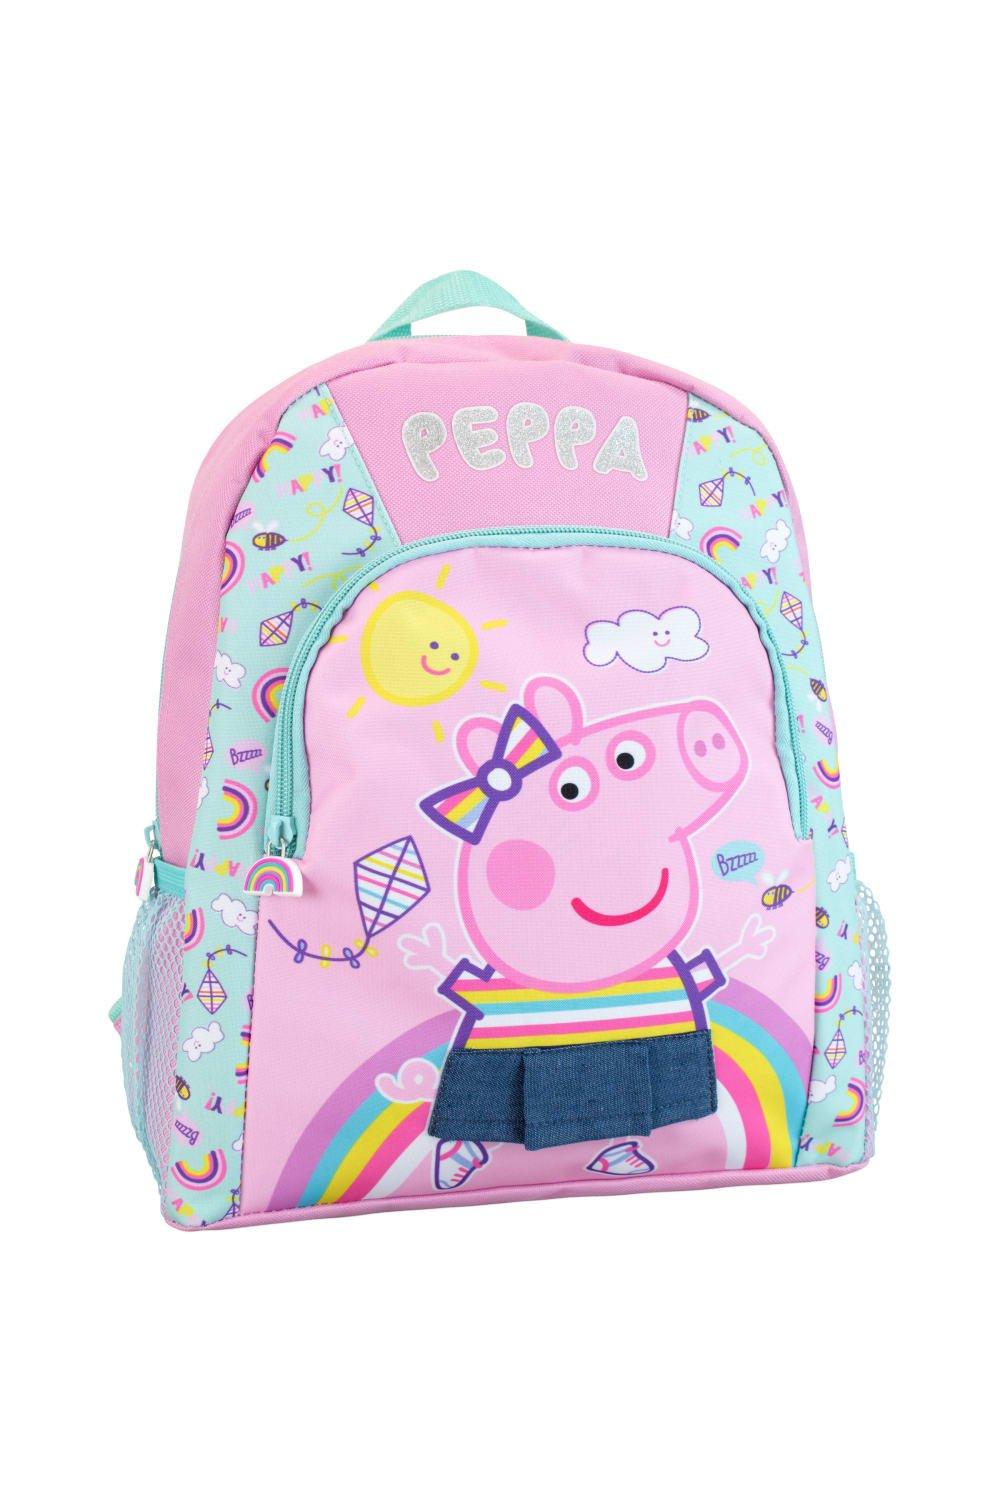 Детский рюкзак Peppa Pig, розовый сумка свинка пеппа добрые поступки